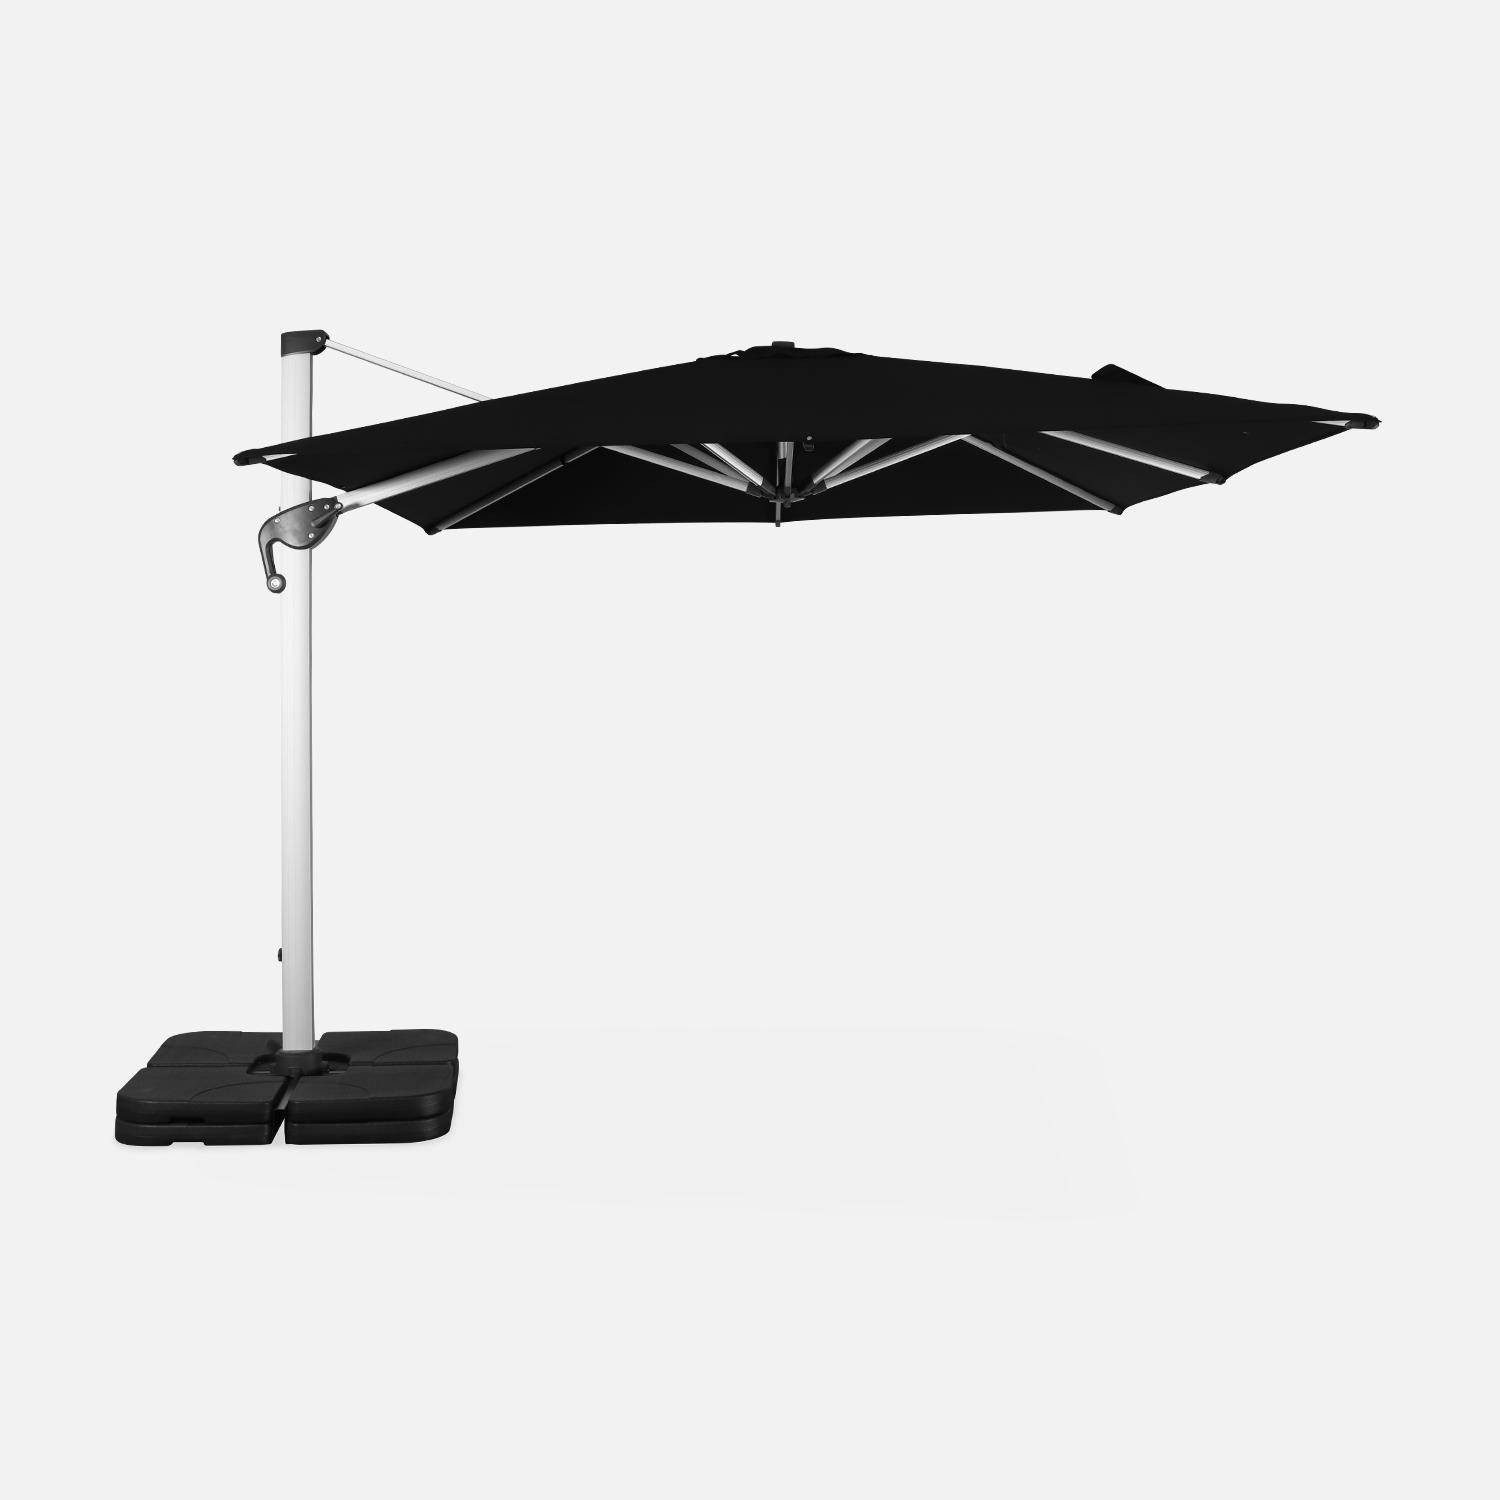 Parasol déporté haut de gamme carré 3x3m – PYLA Noir – Toile Sunbrella ® fabriquée en France par Dickson, structure en aluminium anodisé, rotatif, housse de protection,sweeek,Photo2